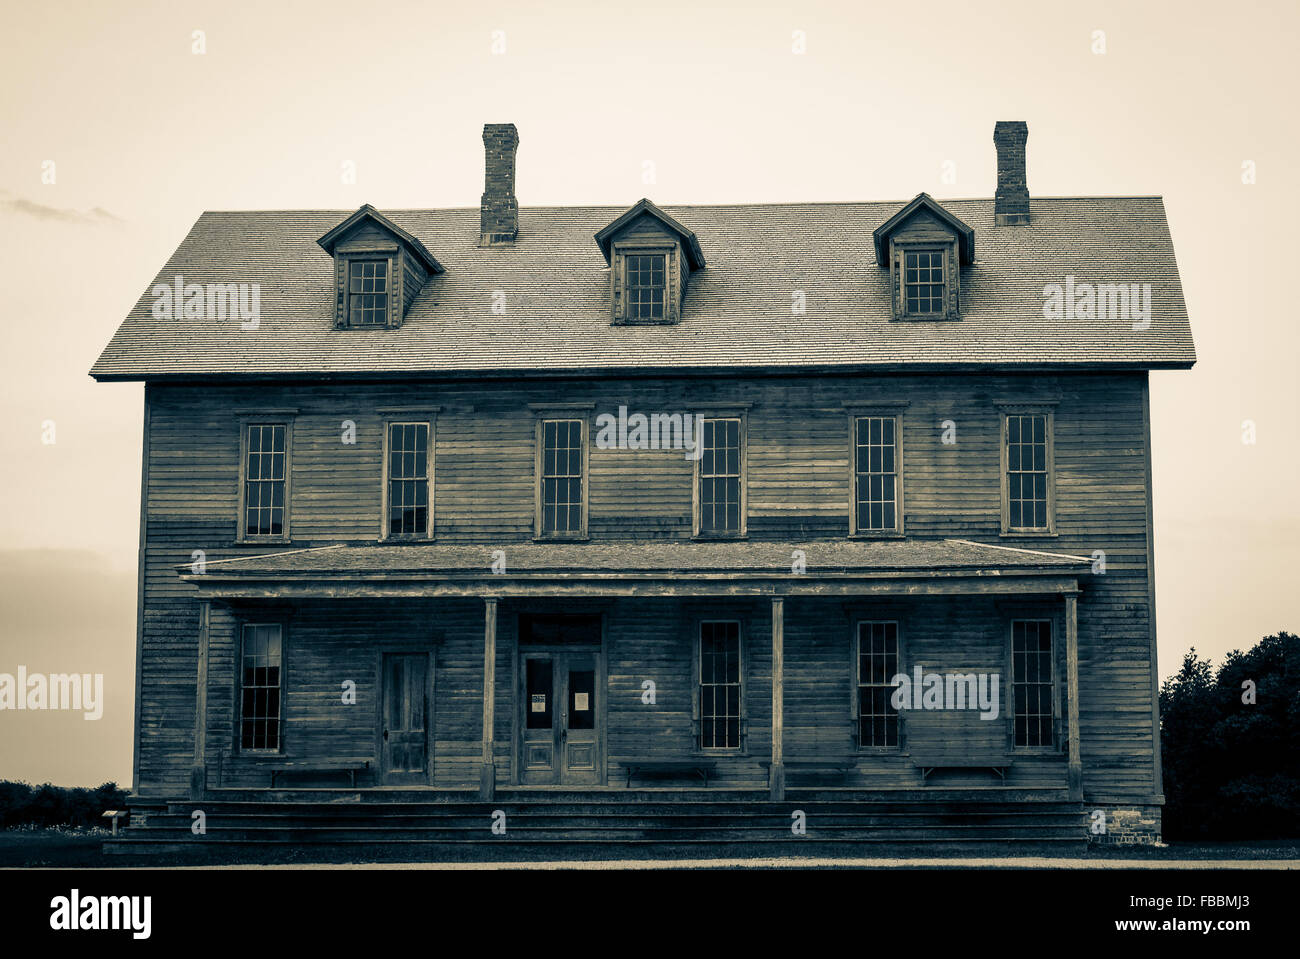 Hotel histórico y boarding house en la abandonada ciudad fantasma de fayette michigan. Fayette State Historical Park. Foto de stock